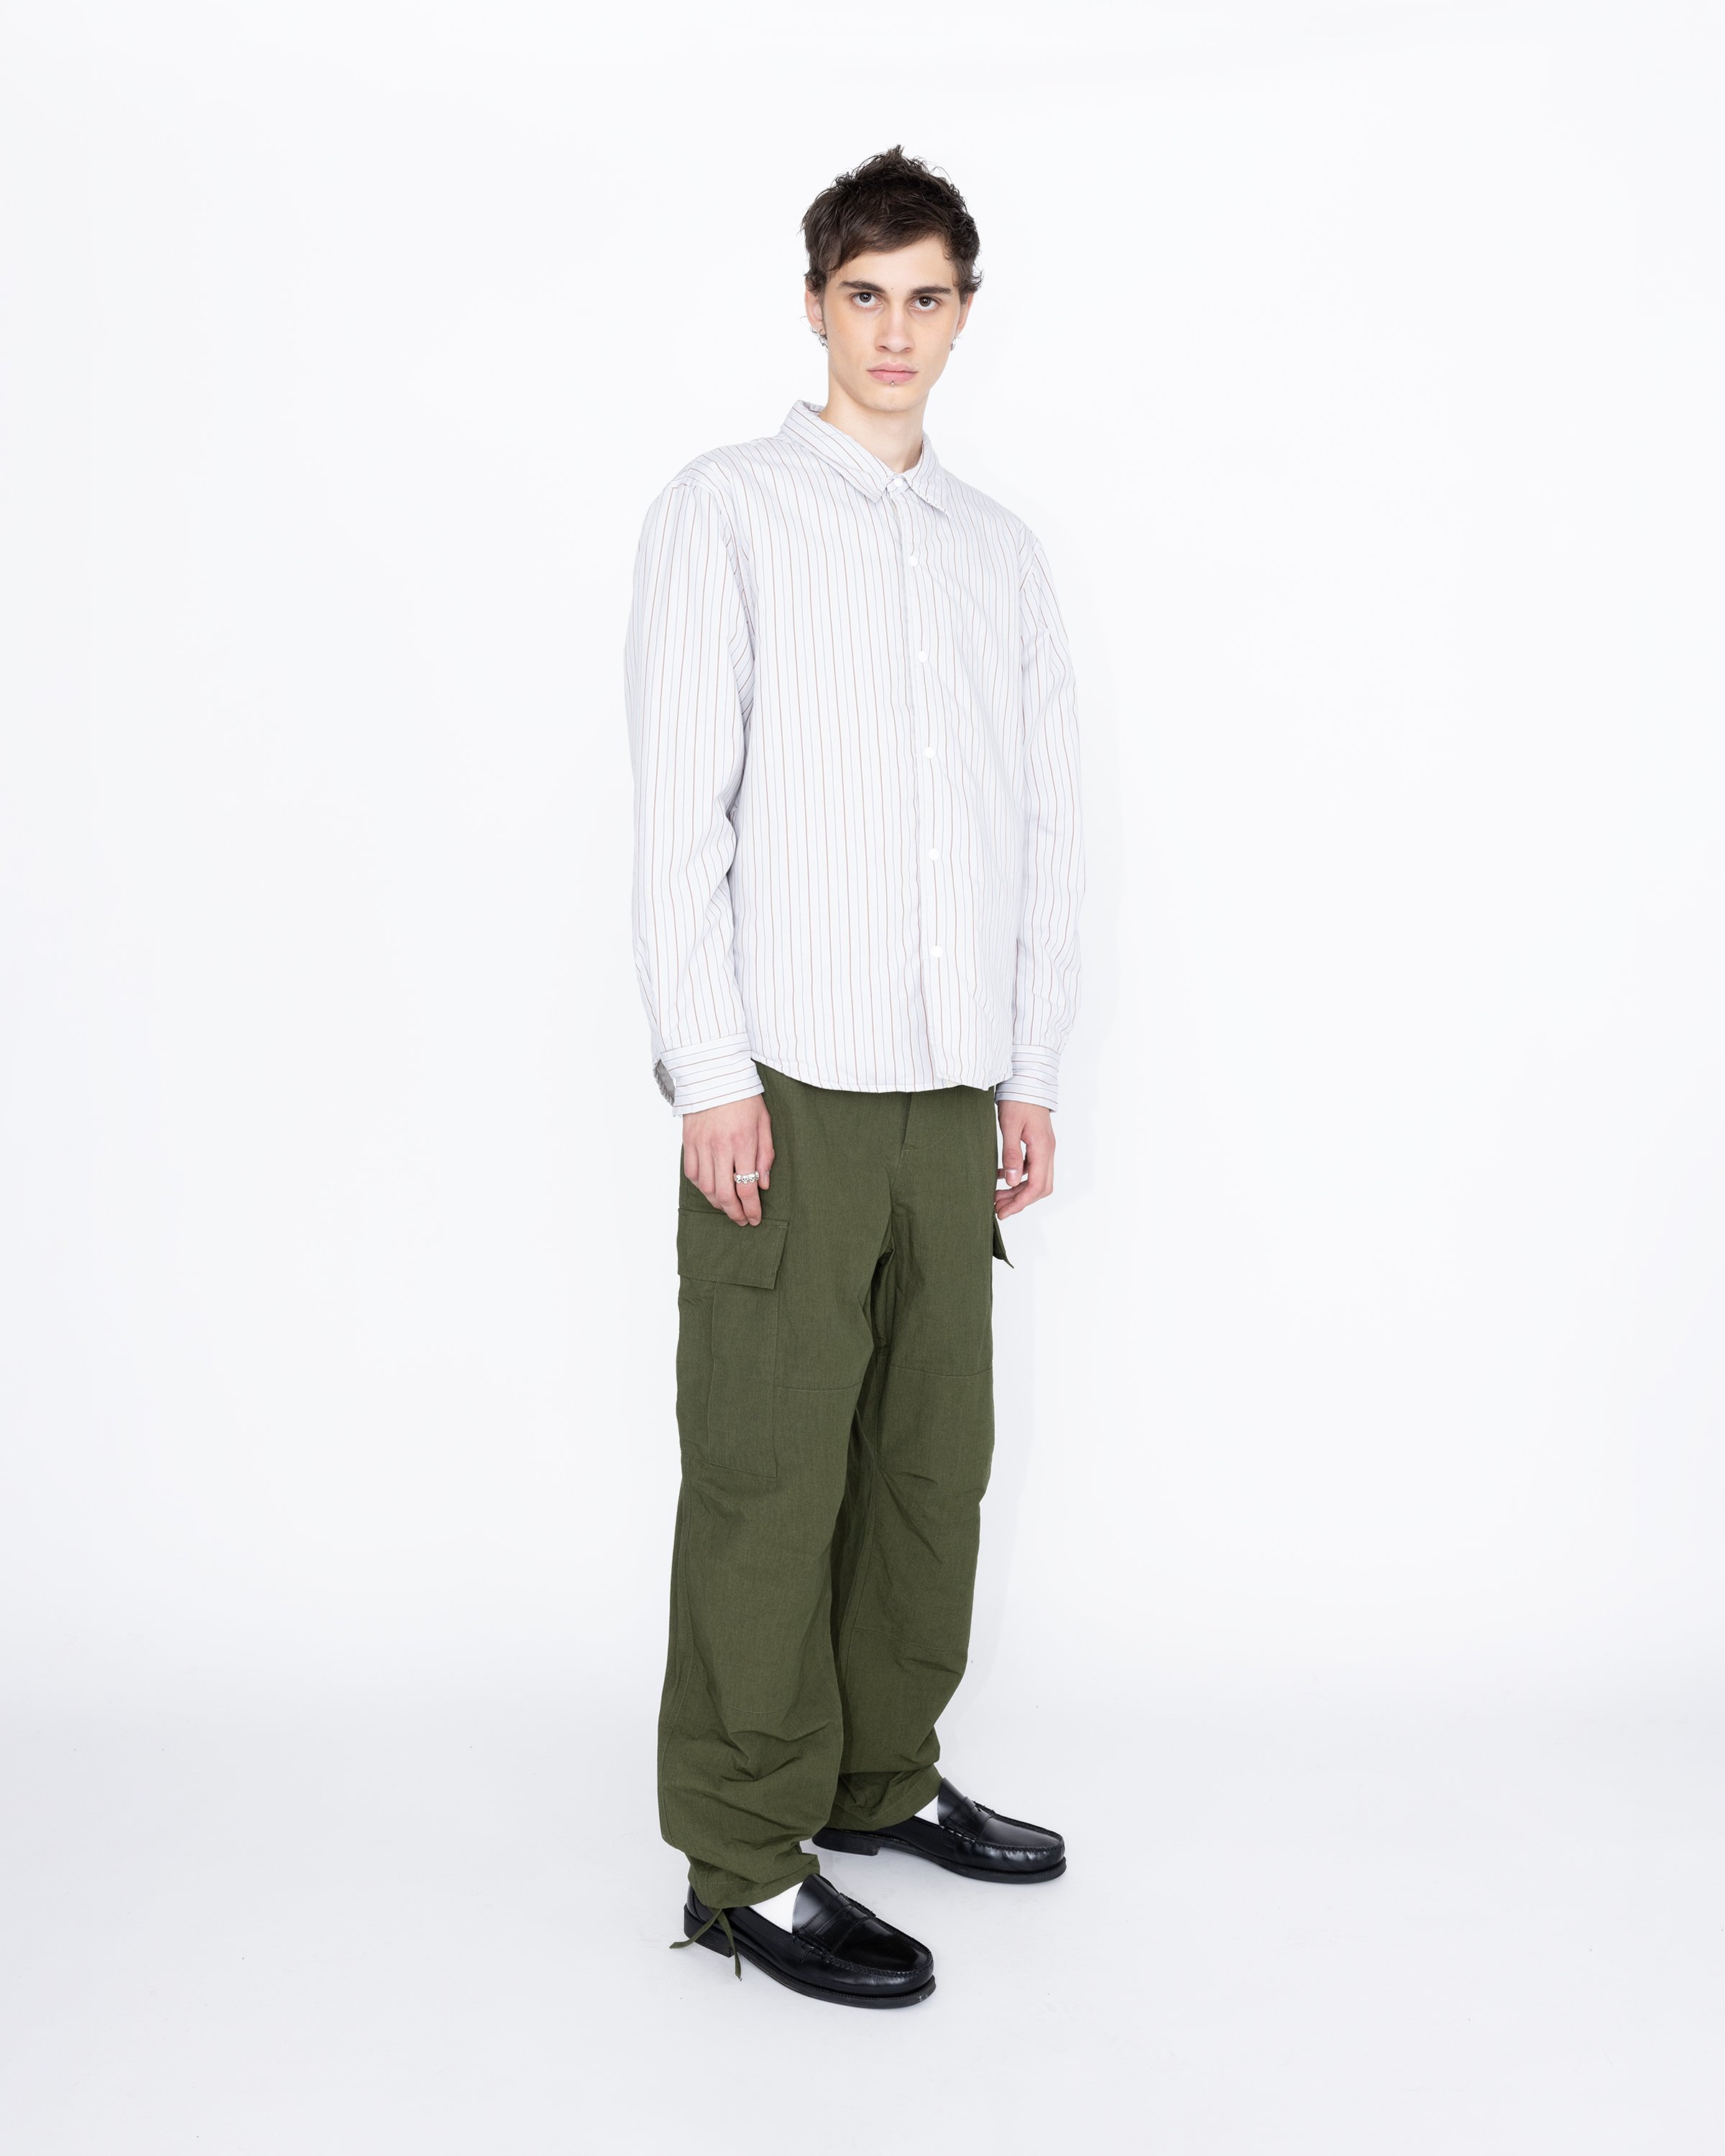 Highsnobiety HS05 - Insulated Shirt Jacket Stripes - Clothing - Beige - Image 3